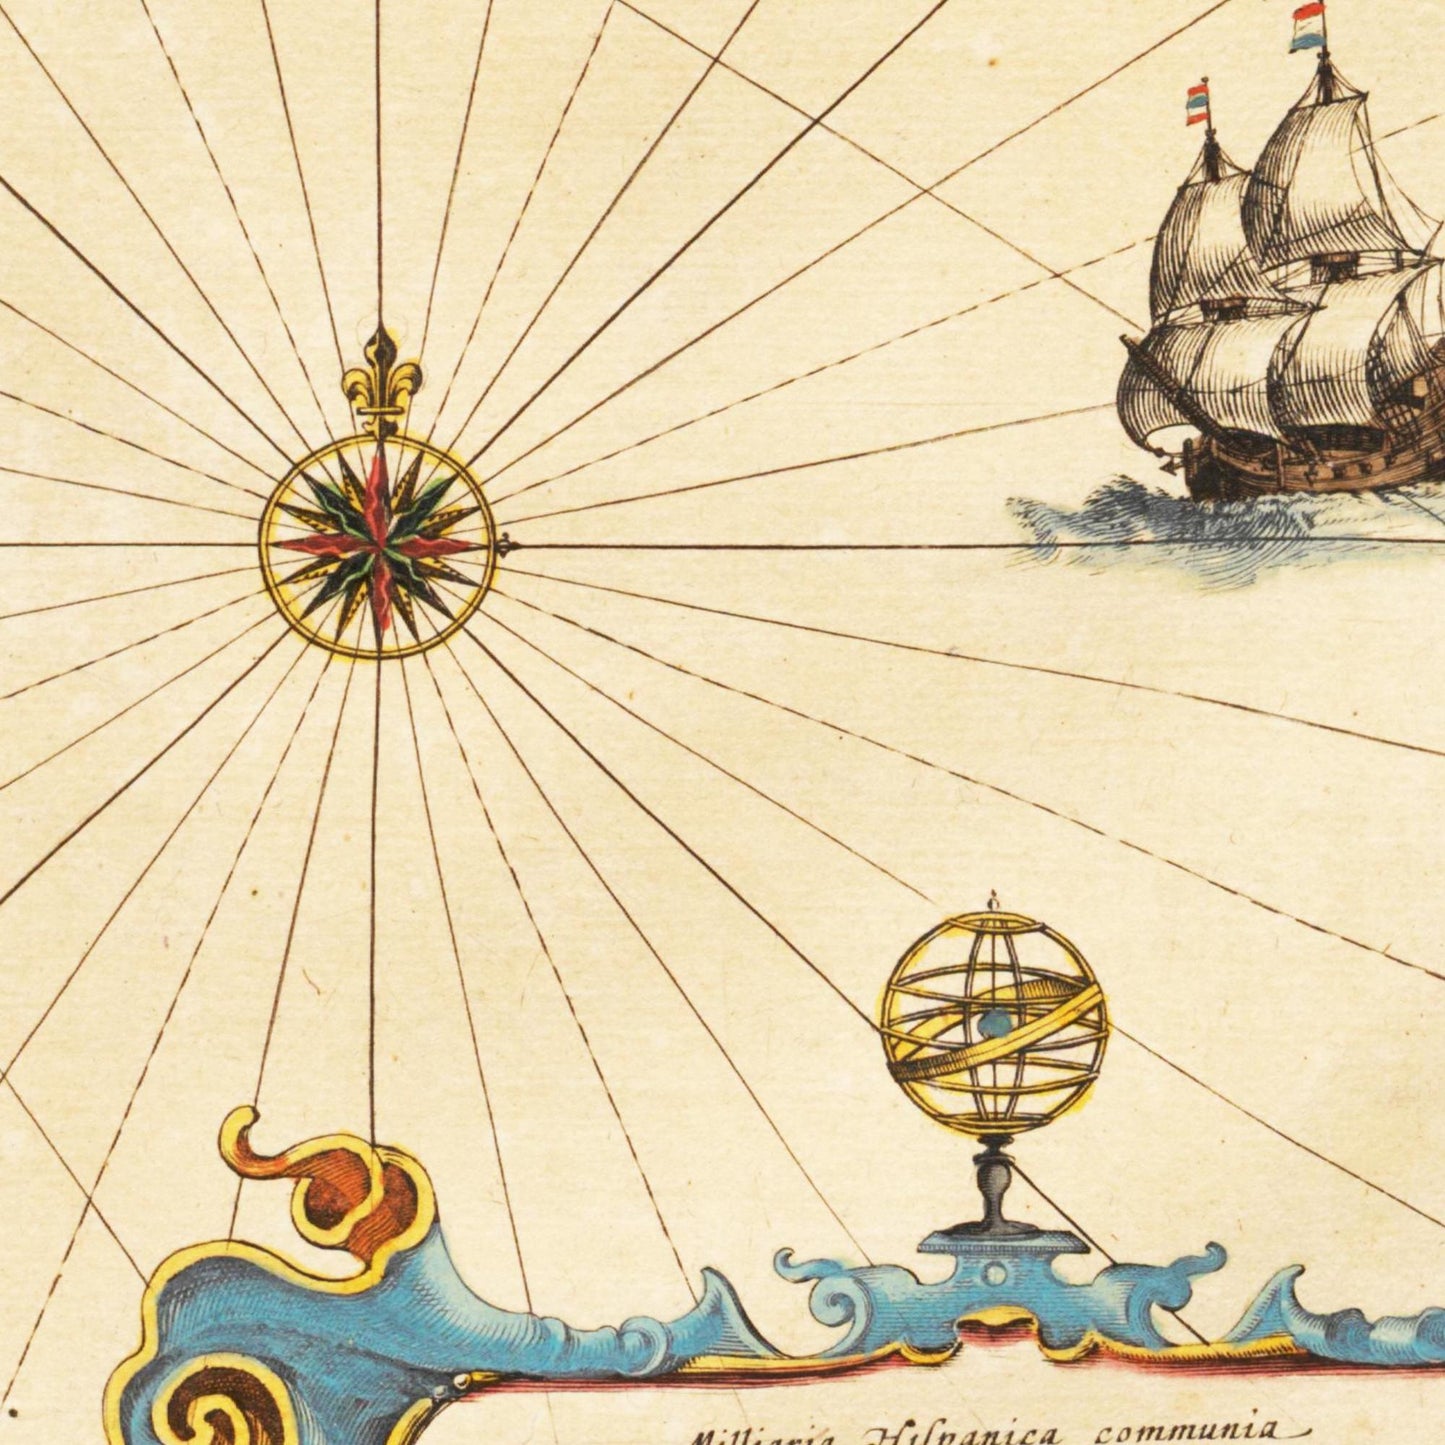 Historische Landkarte Balearische Inseln um 1635